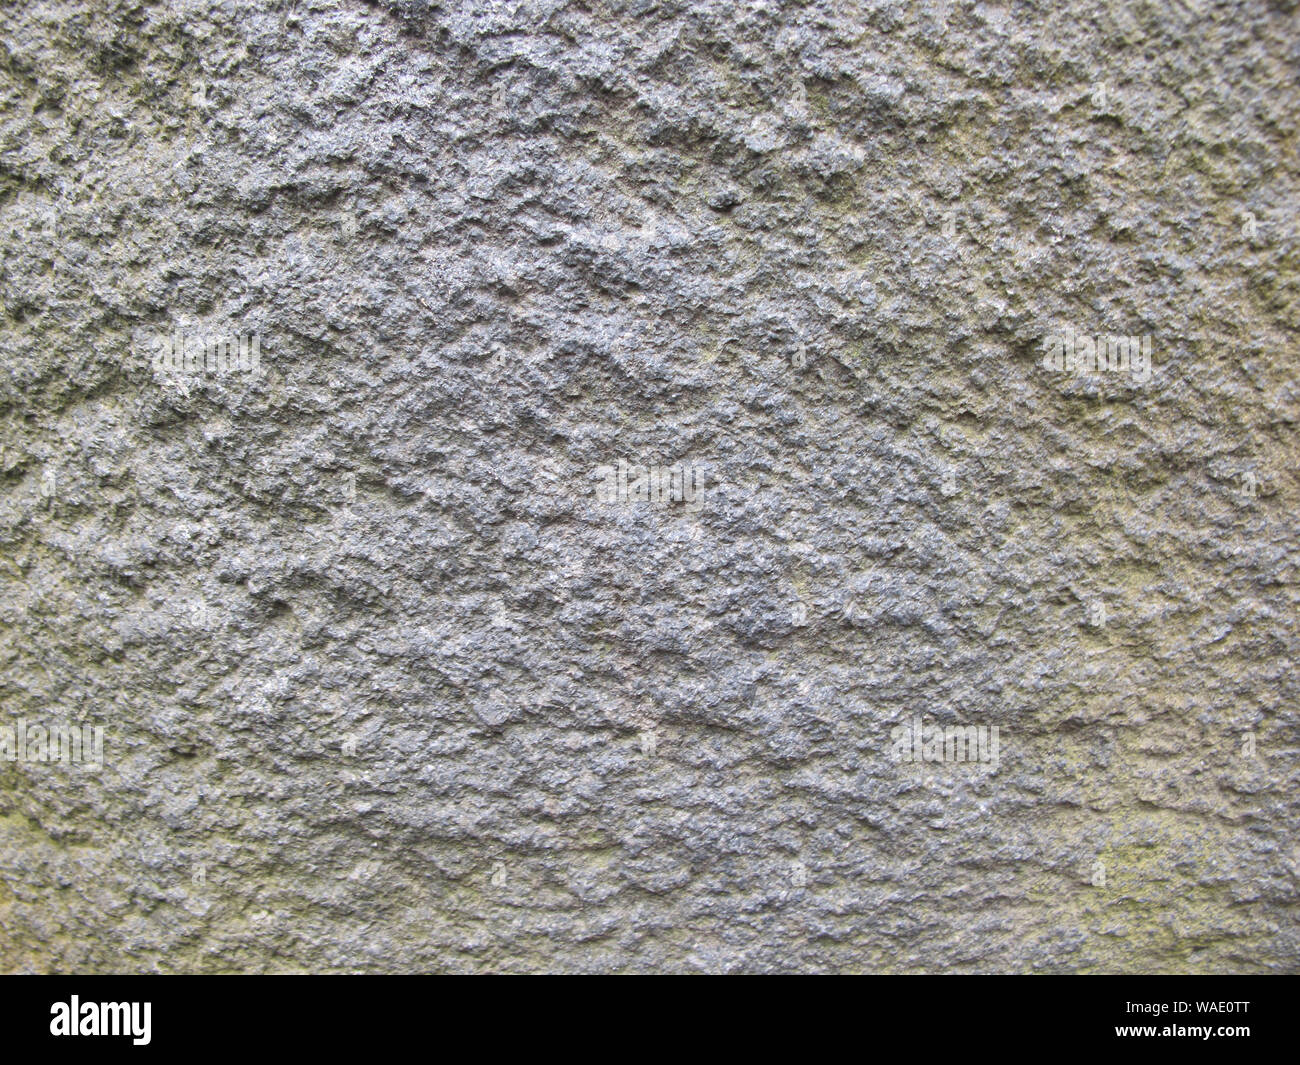 Grey hard rock texture material Stock Photo